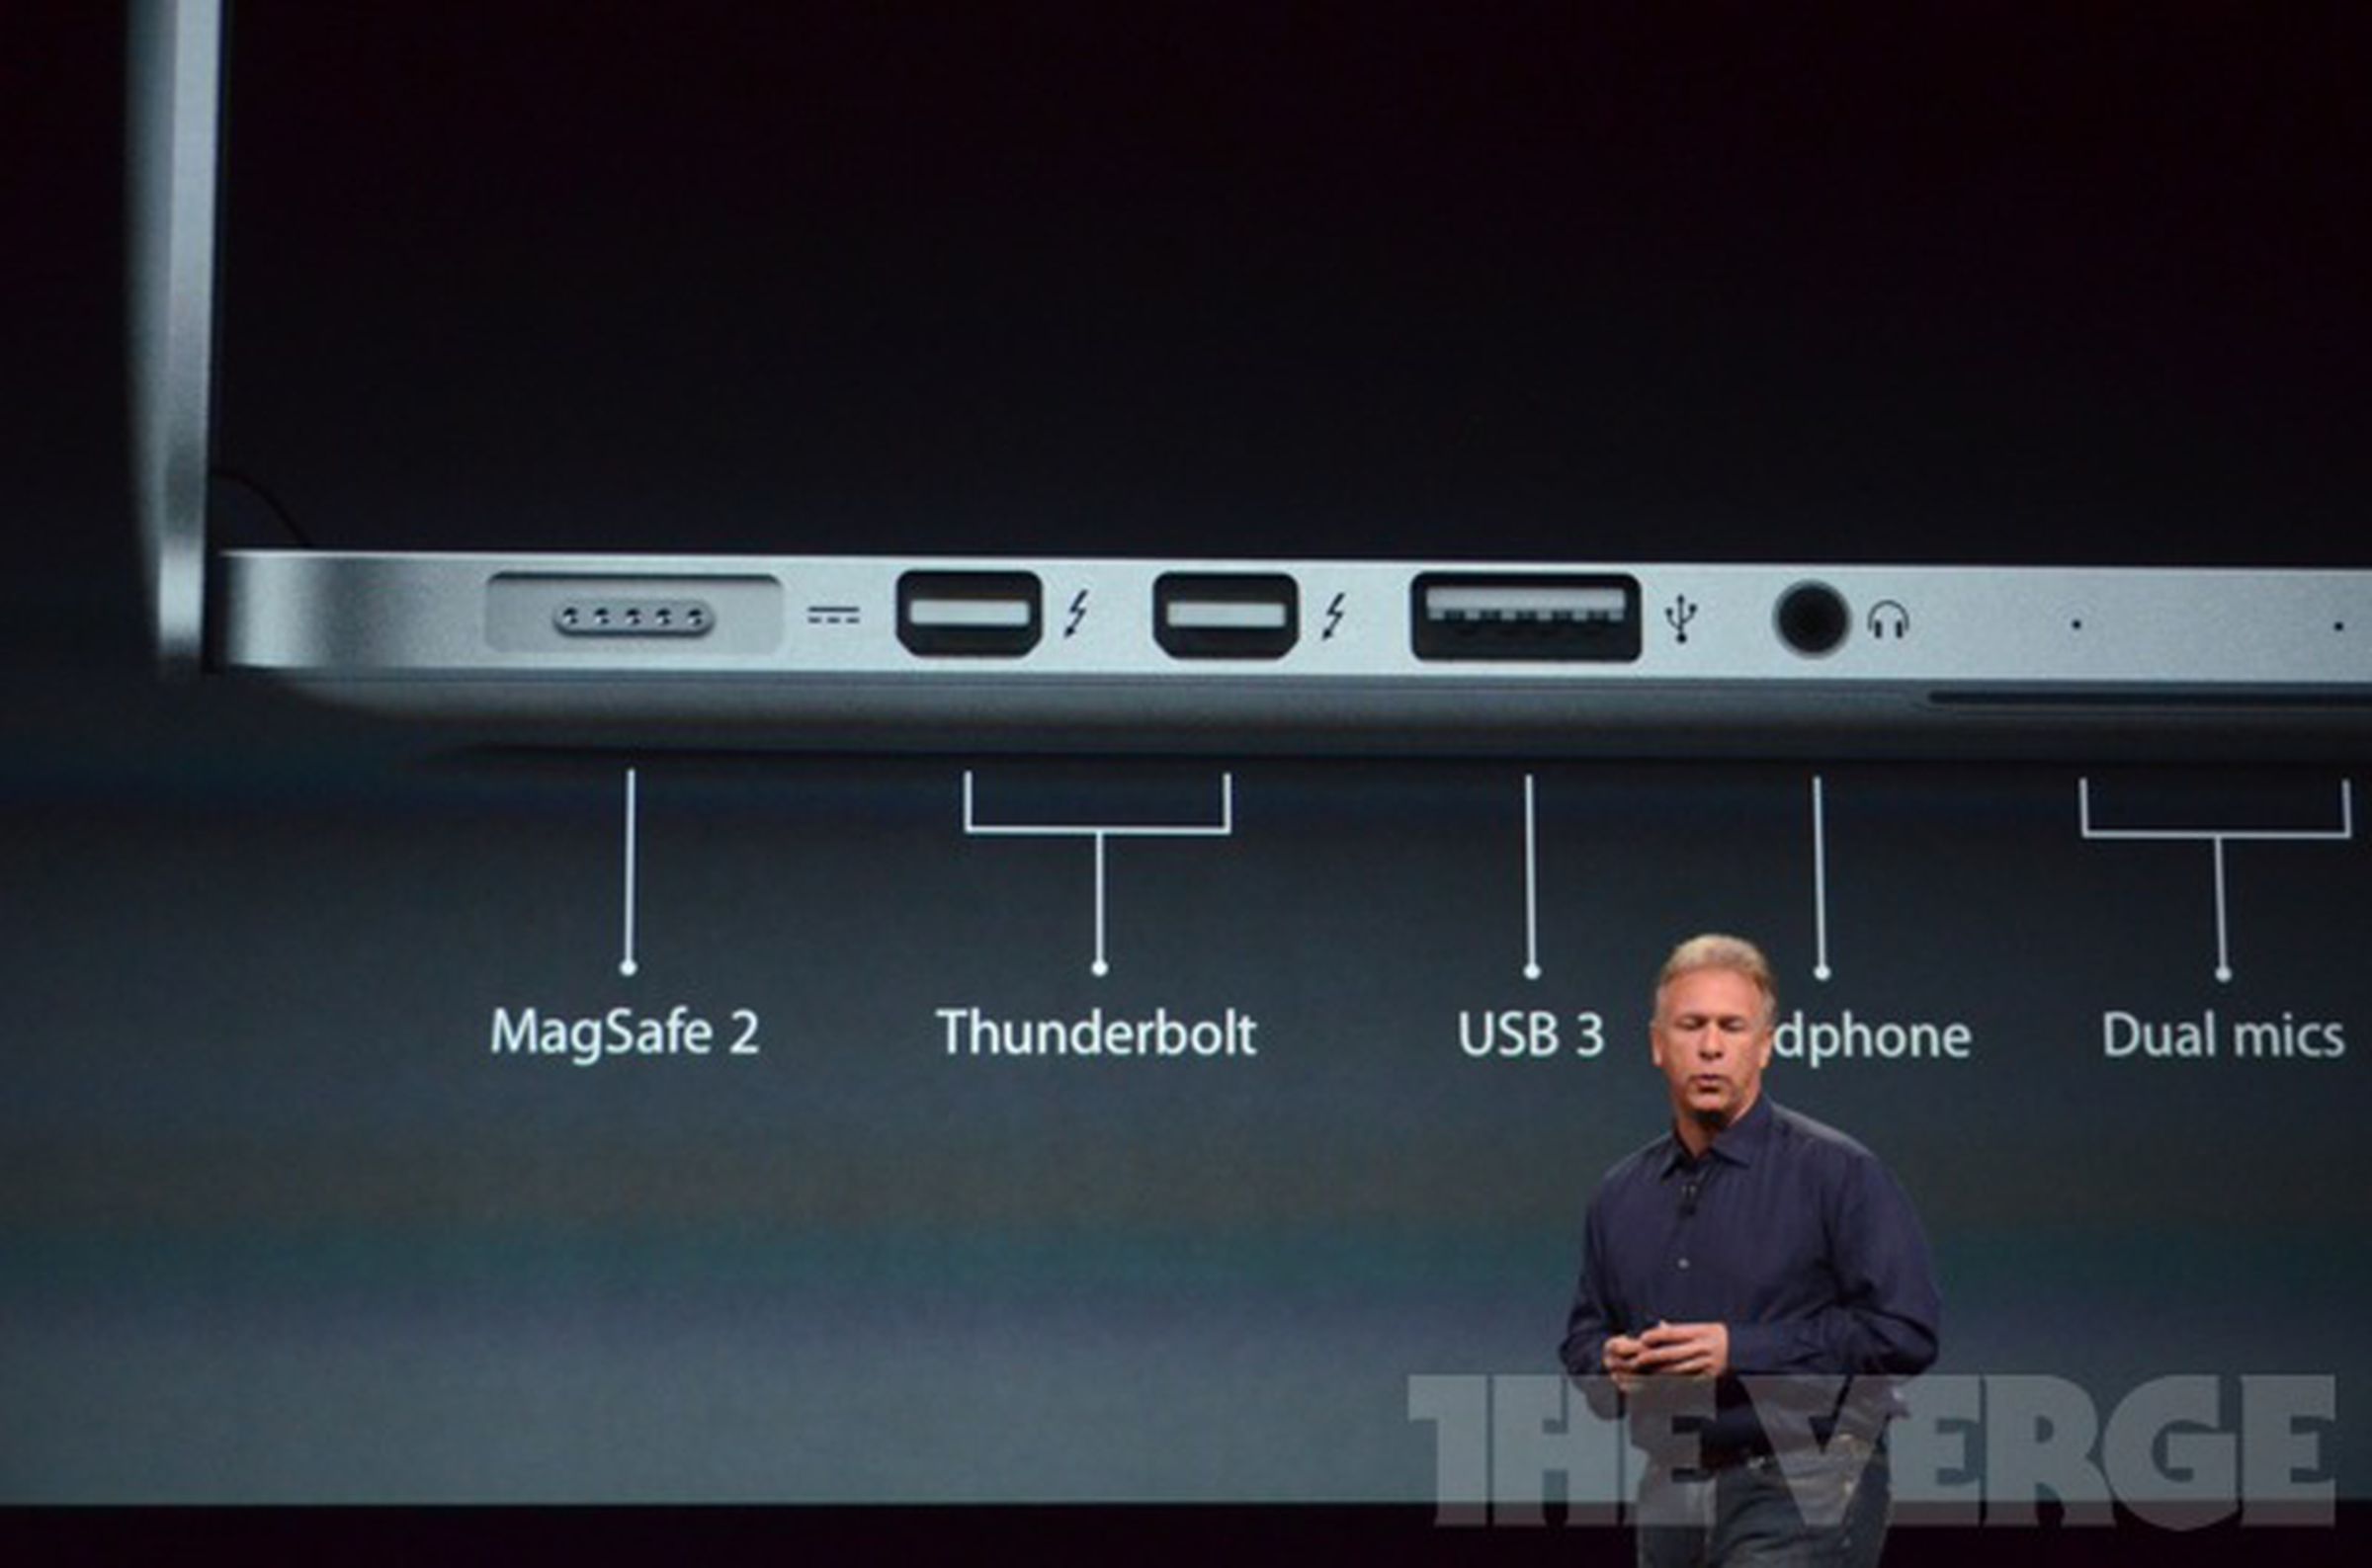 Apple's new 13-inch MacBook Pro with retina display liveblog images